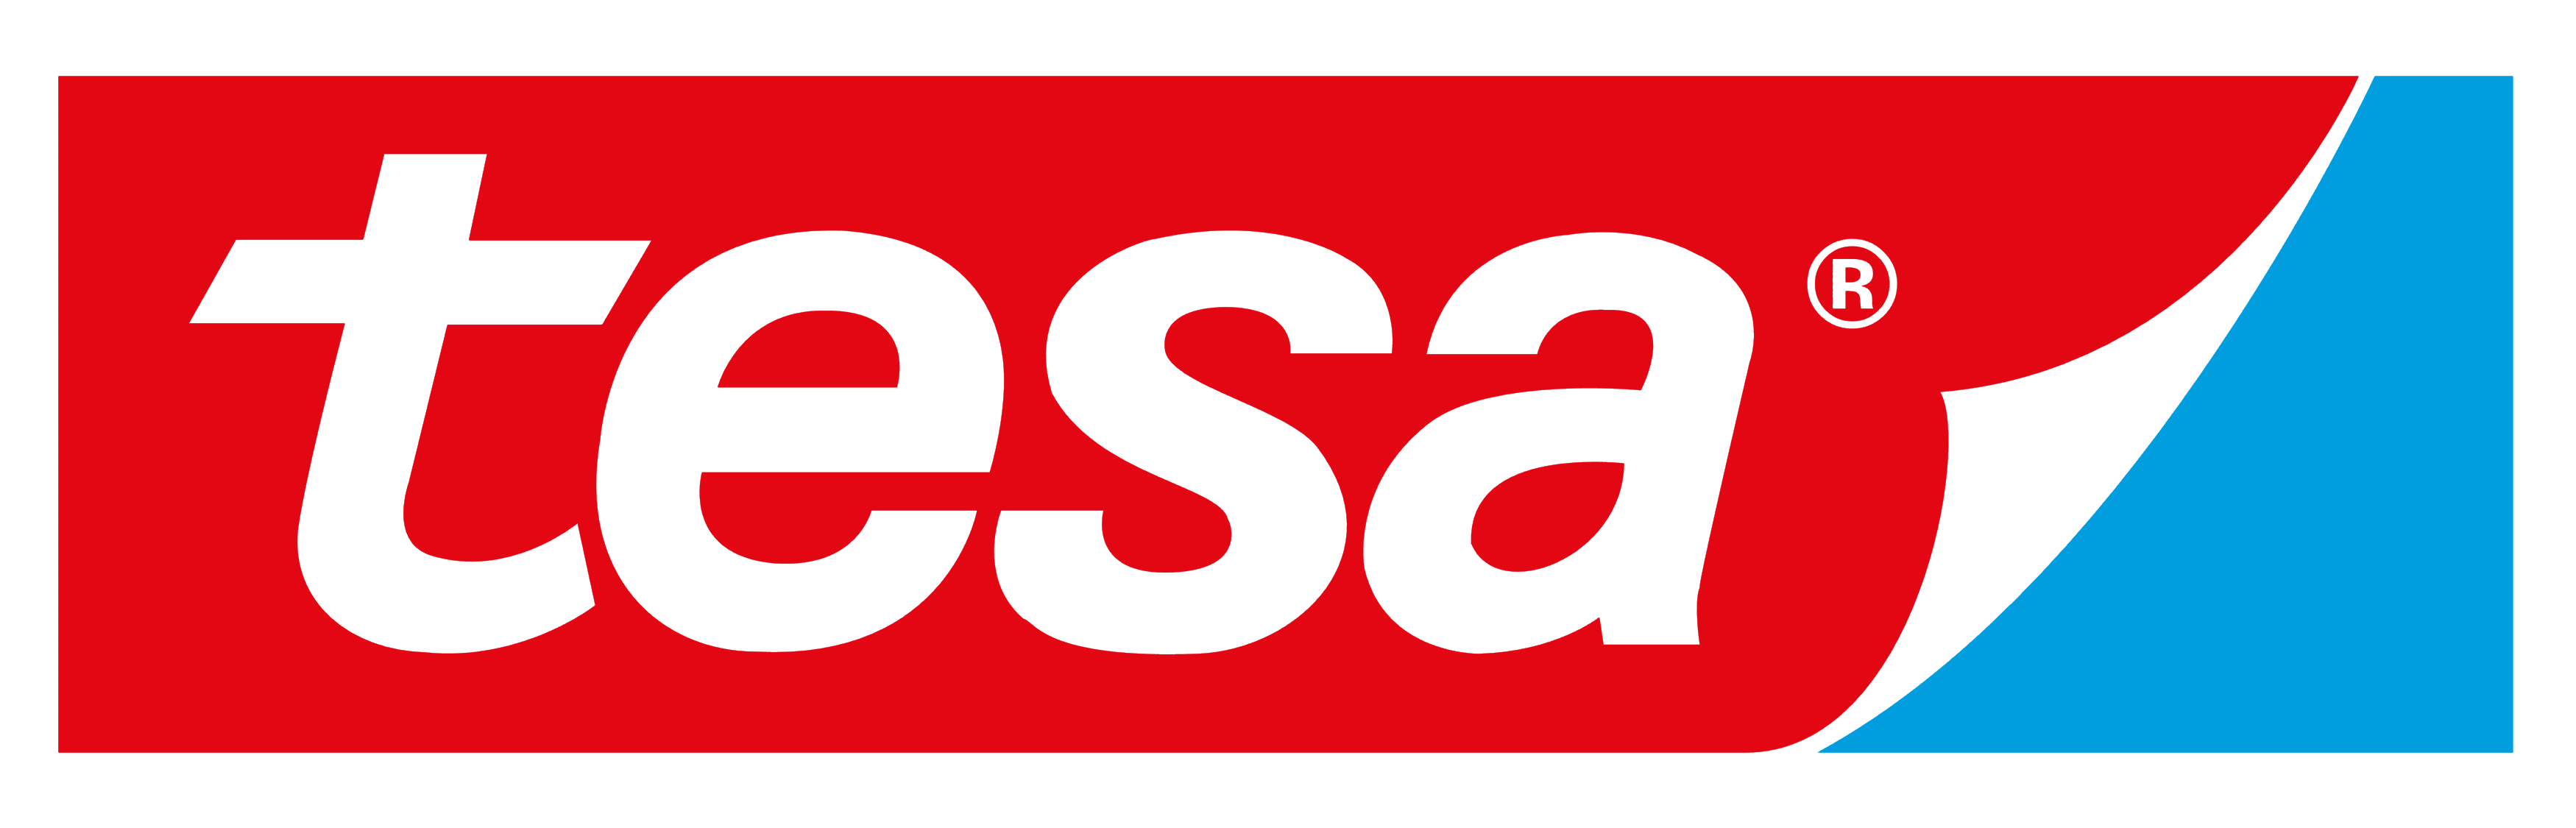 Tesa logo, logotype